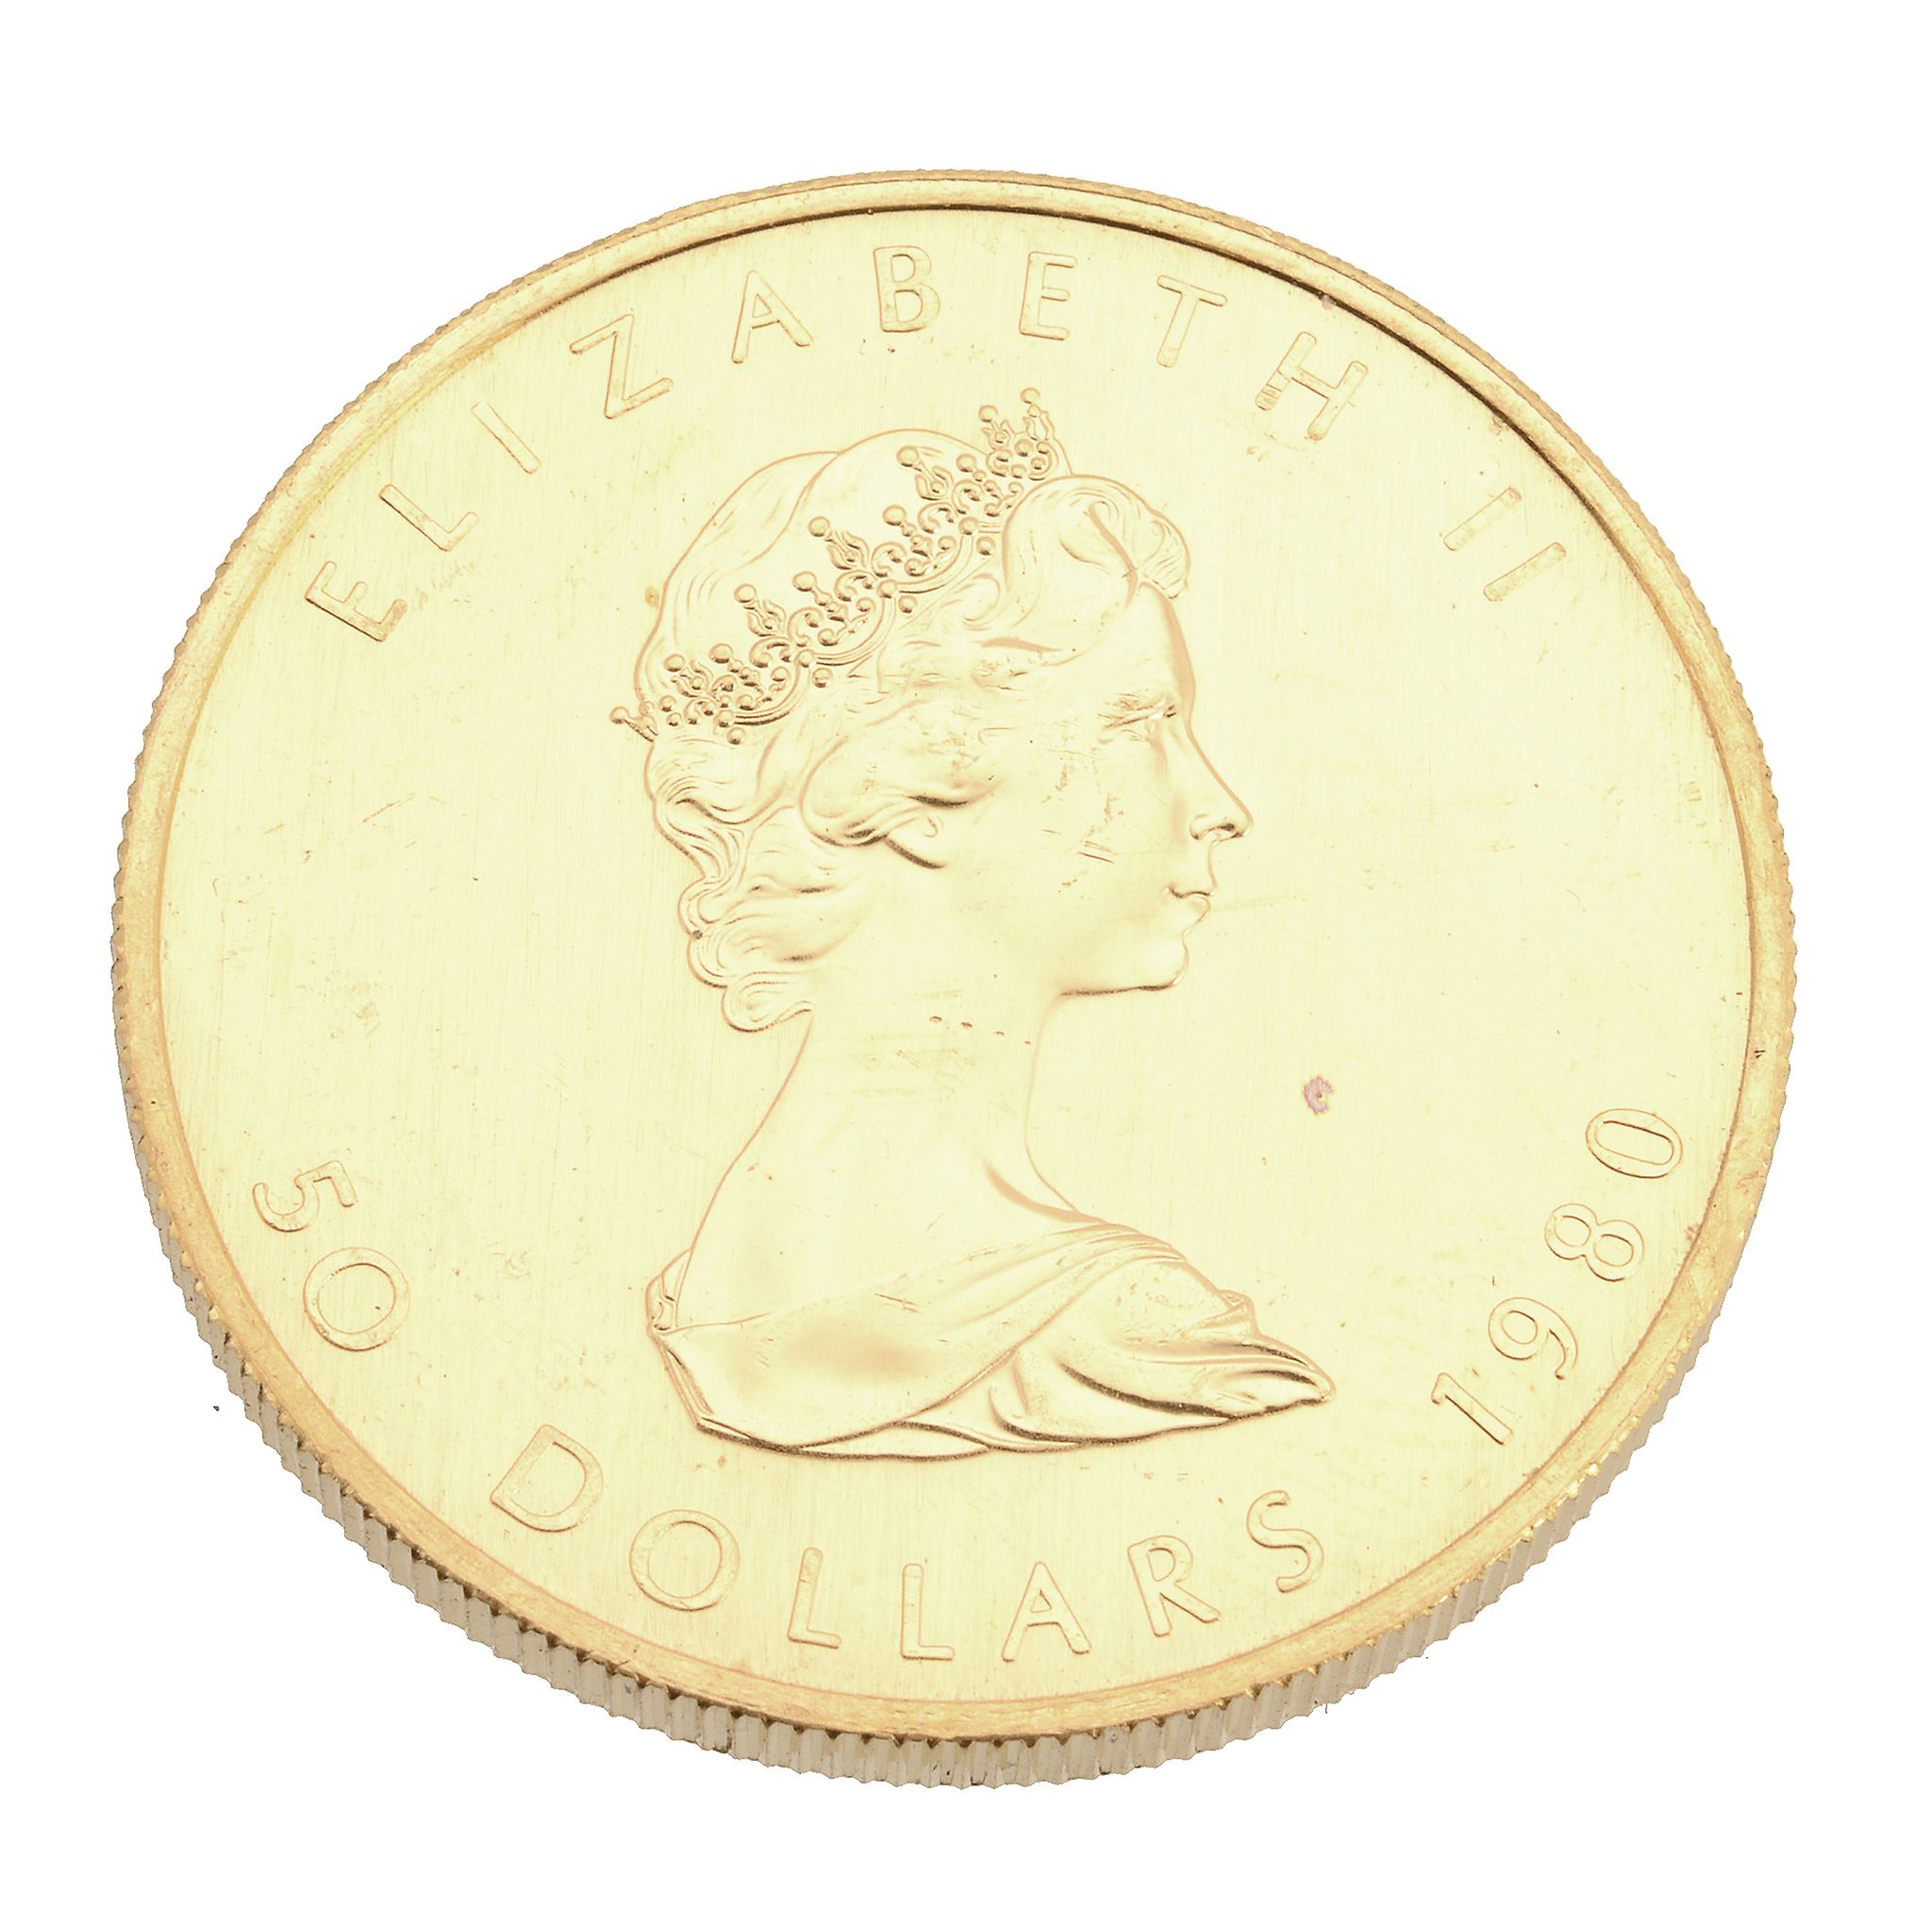 Canada, Elizabeth II, gold 50-Dollars 1996. Extremely fine